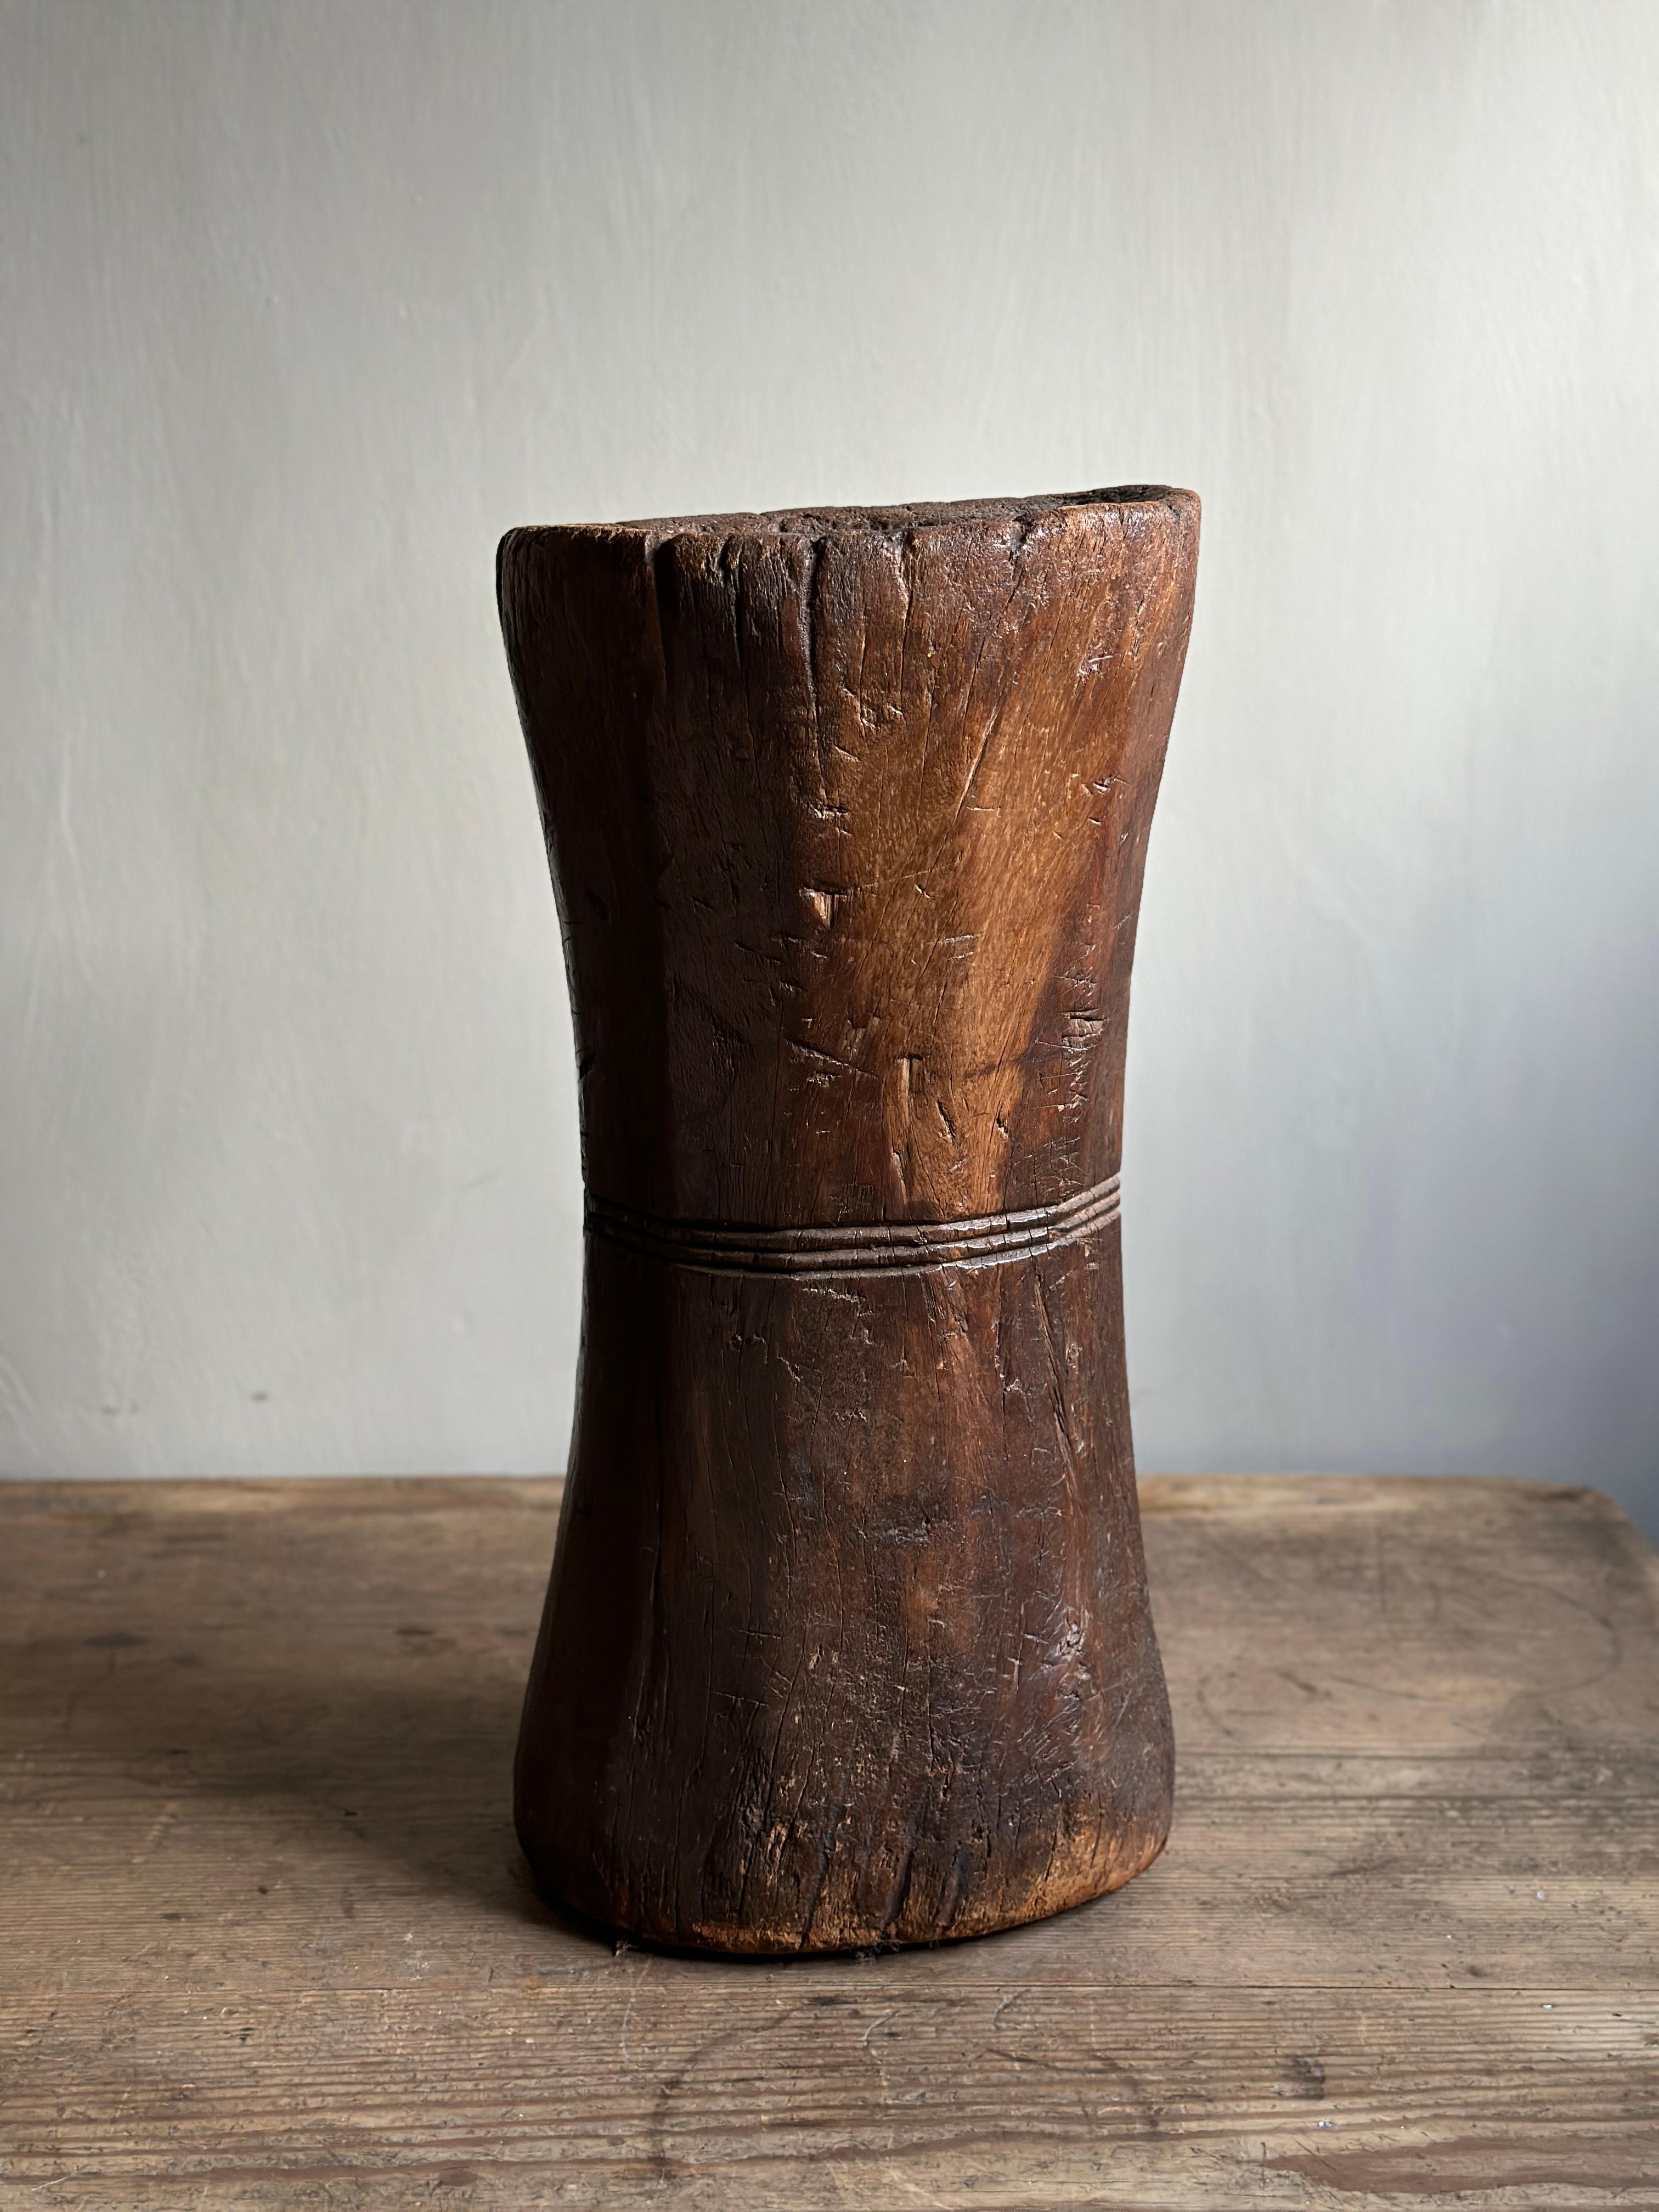 Magnifique mortier Wabi Sabi sculpté à la main qui convient parfaitement à une jardinière. D'un designer inconnu en Afrique, c. début du 20e siècle. 

Usures dues à l'âge et à l'utilisation, avec une magnifique patine d'usage. 